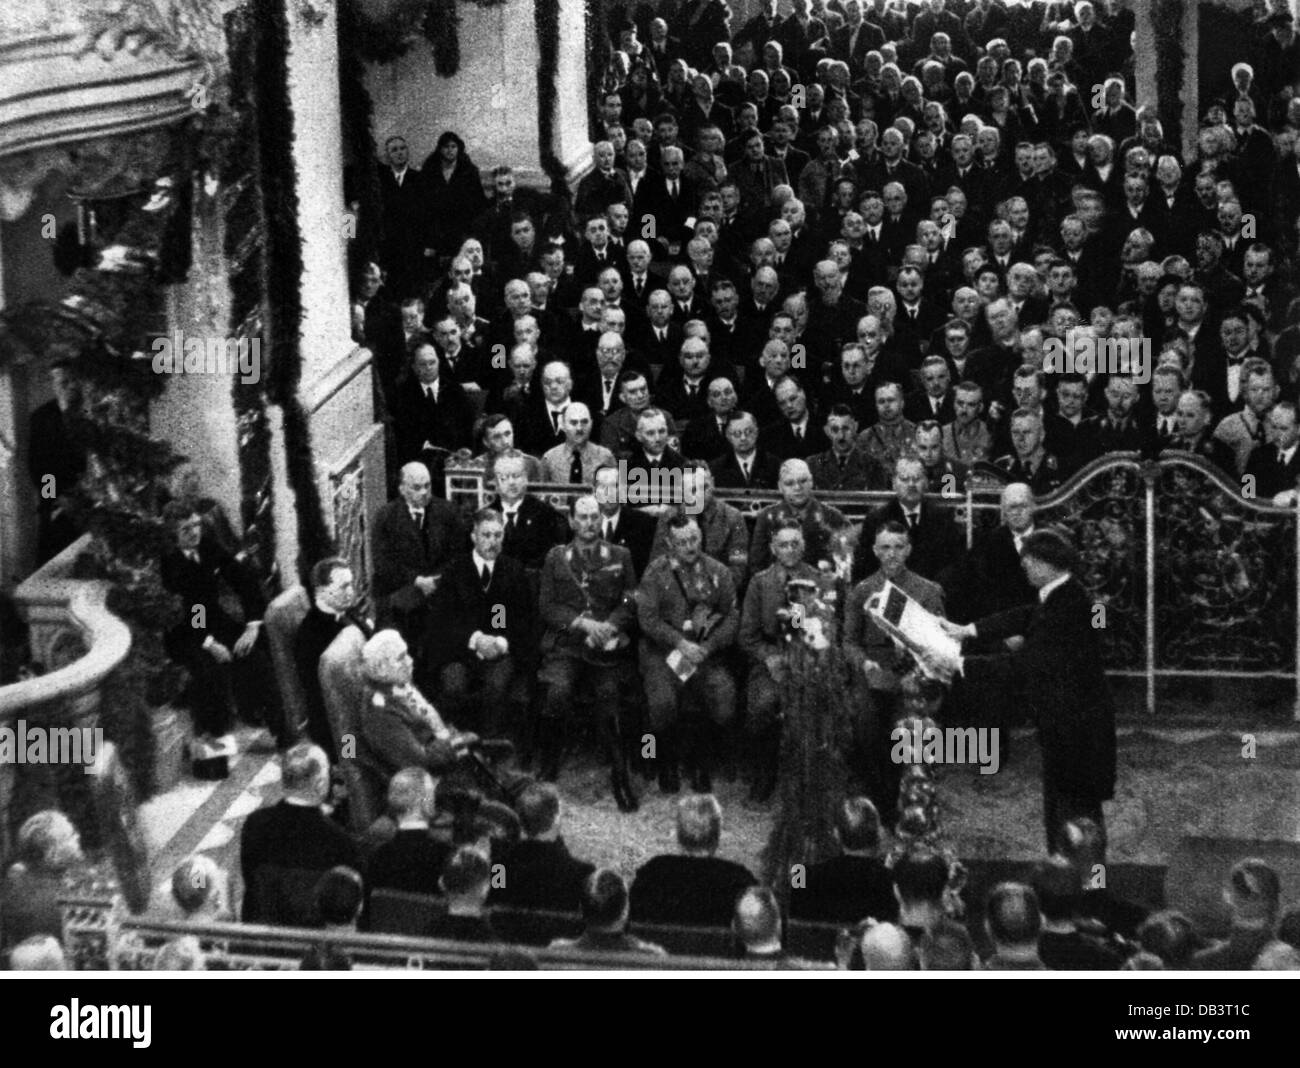 Nationalsozialismus, Politik, 'Tag von Potsdam', Kanzler Adolf Hitler hält eine Rede vor Präsident Paul von Hindenburg, Garnisonskirche, 21.3.1933, Zusatzrechte-Clearences-nicht vorhanden Stockfoto